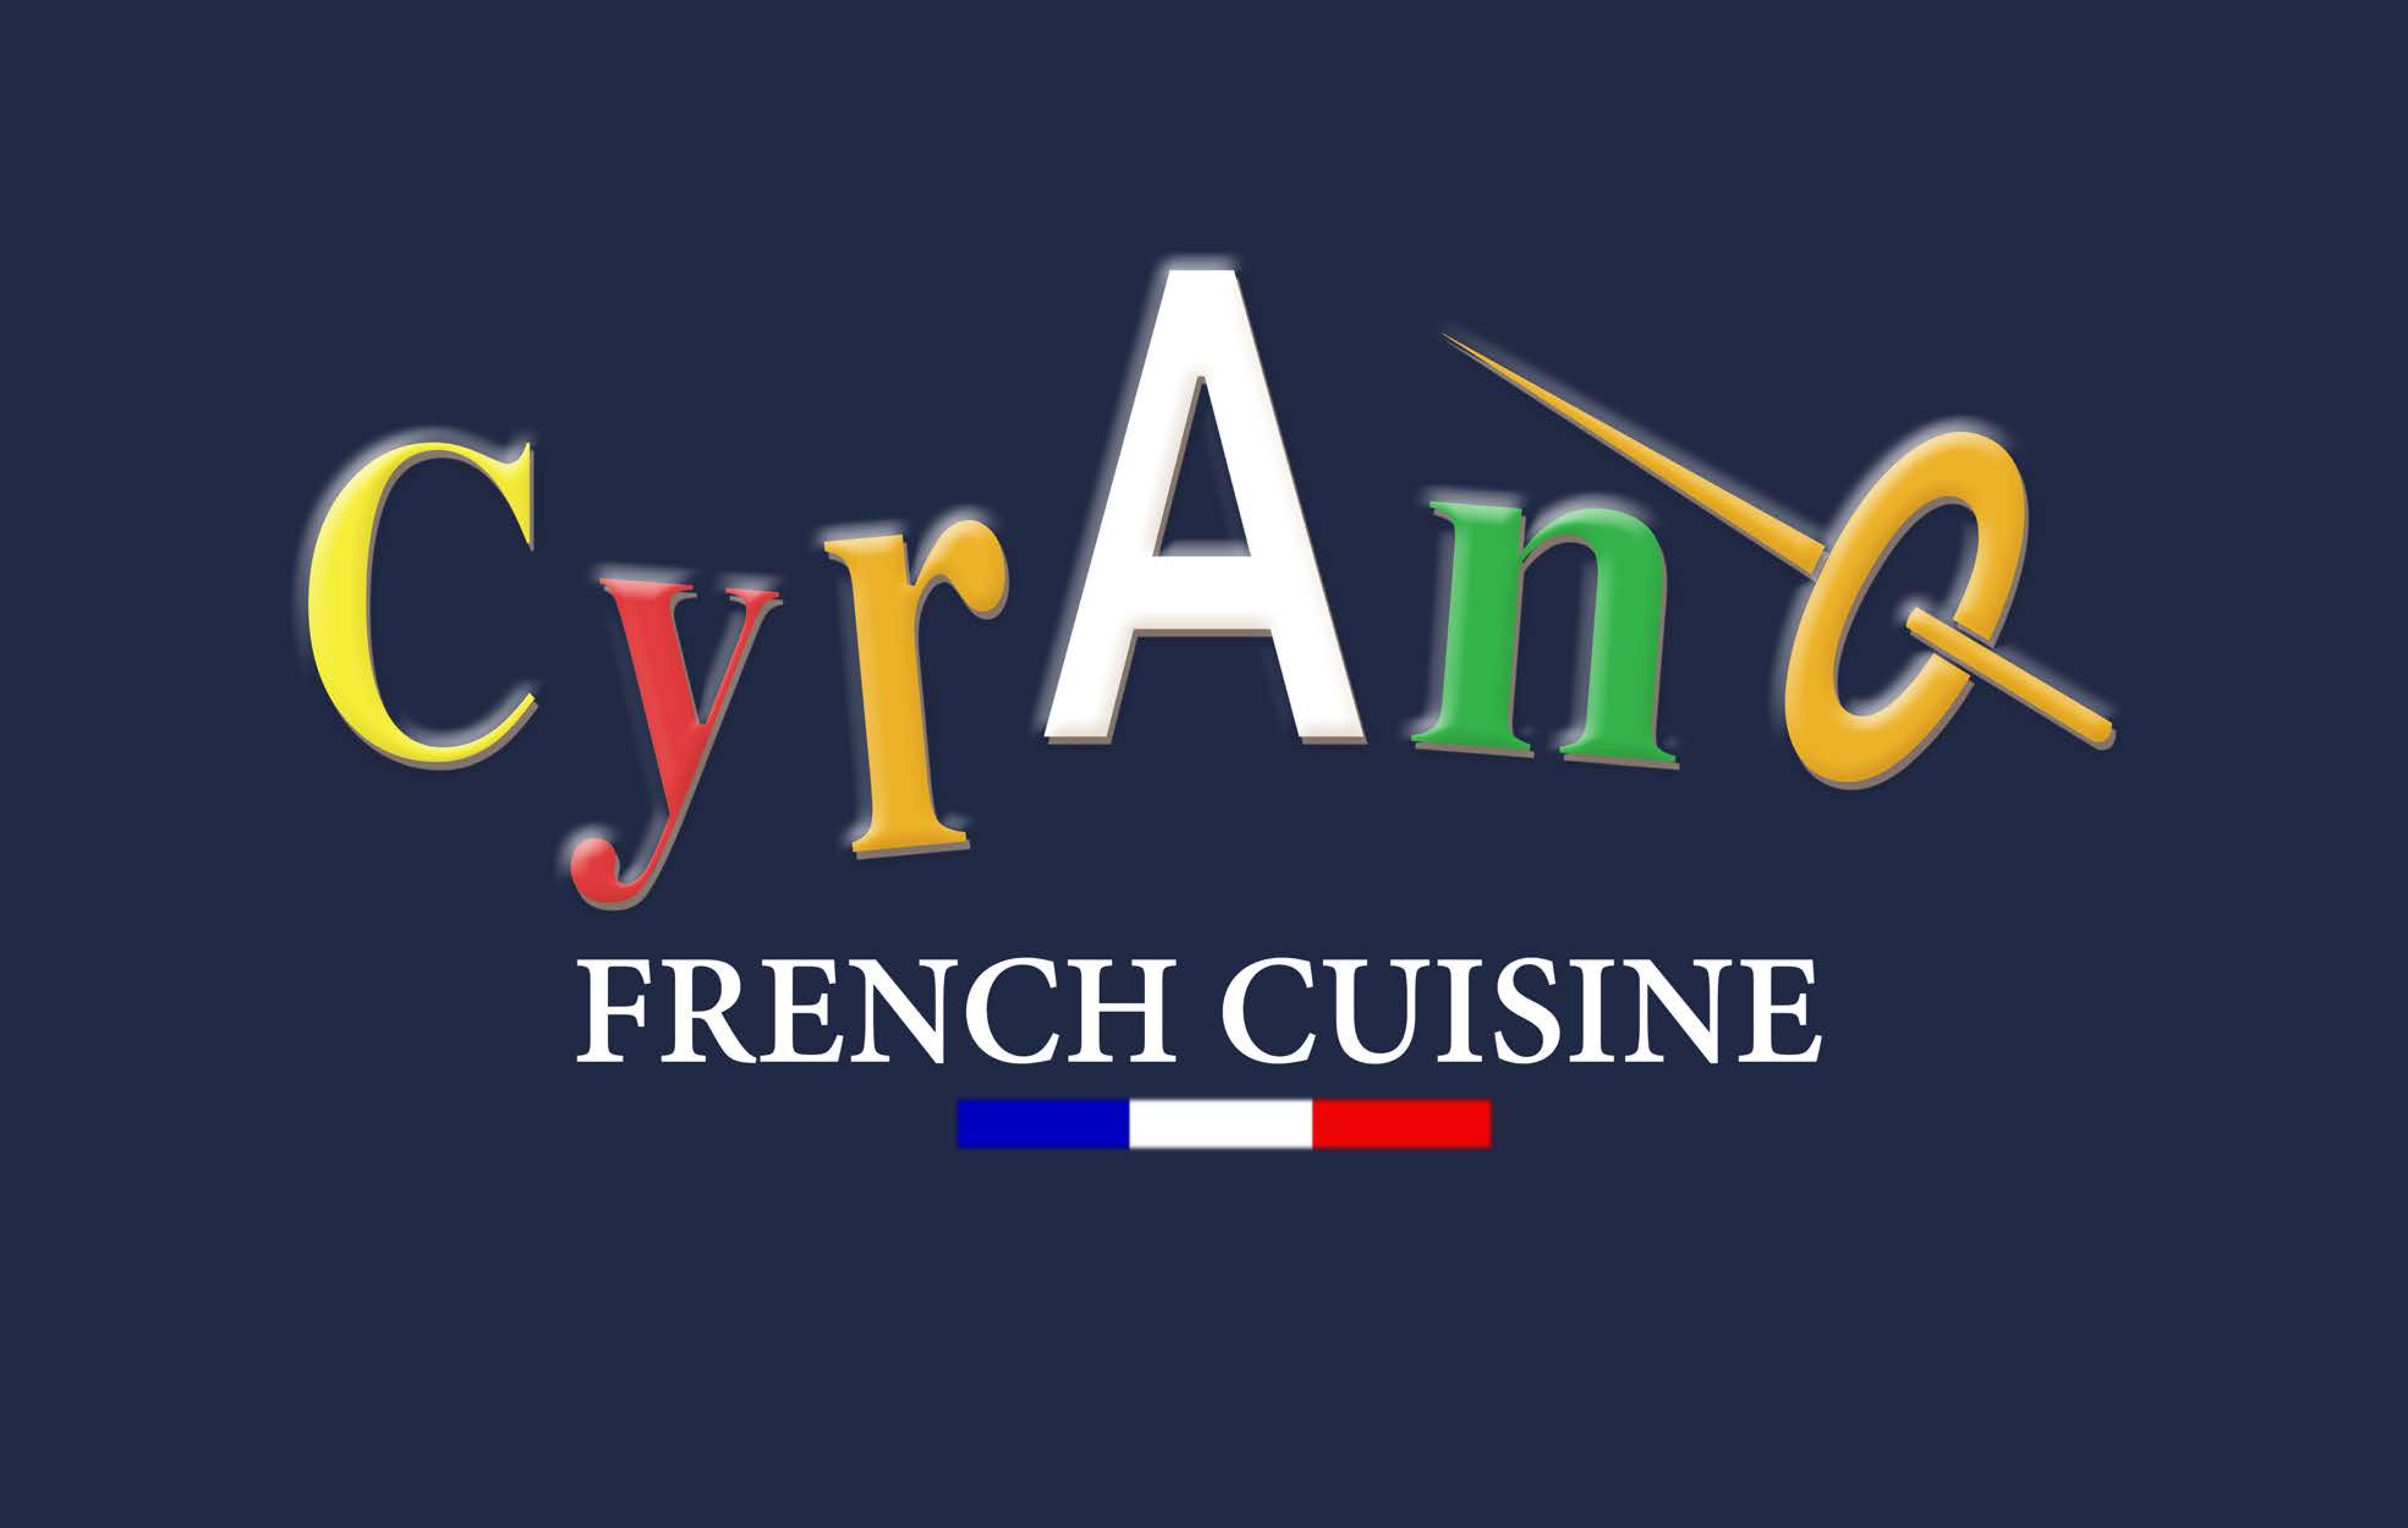 Cyrano Alingsås logo